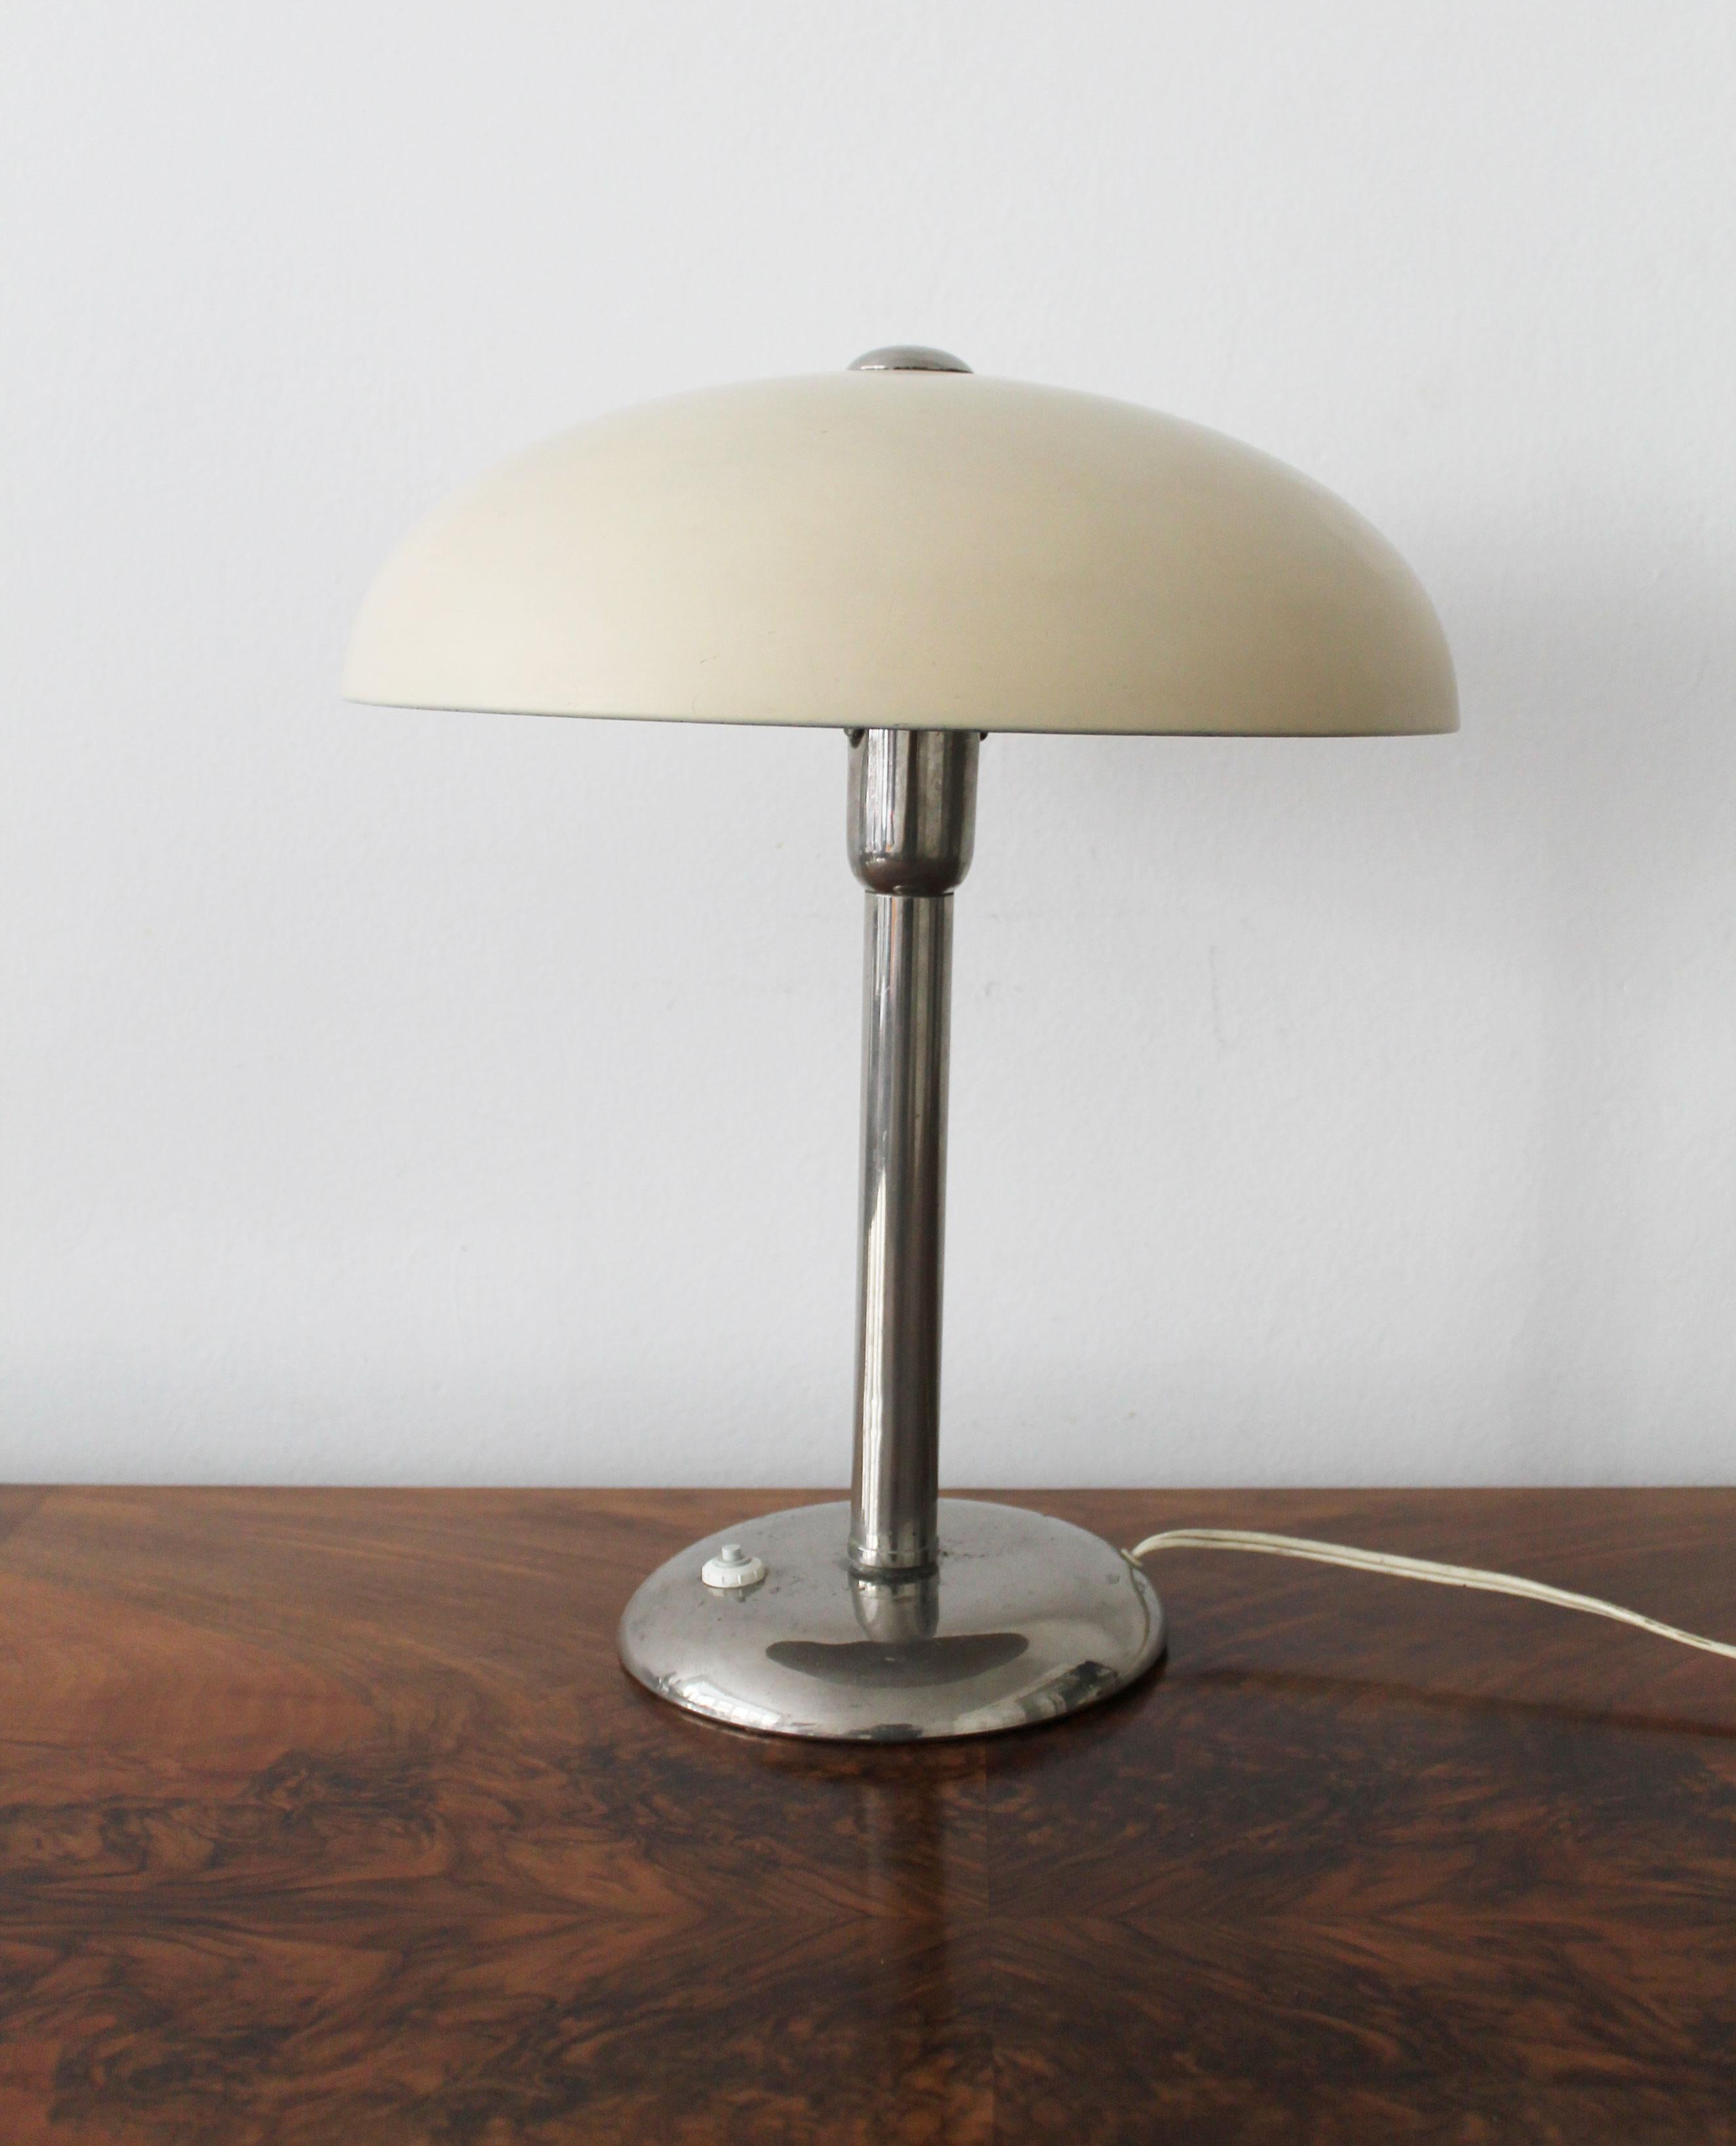 Diese modernistische Tischlampe aus den 1930er Jahren besteht aus verchromtem Stahl mit einem cremefarbenen Lampenschirm. Die Glühbirne ist senkrecht unter dem großen, pilzförmigen Schirm angebracht, der mit einer einzigen flachen Schraube an der